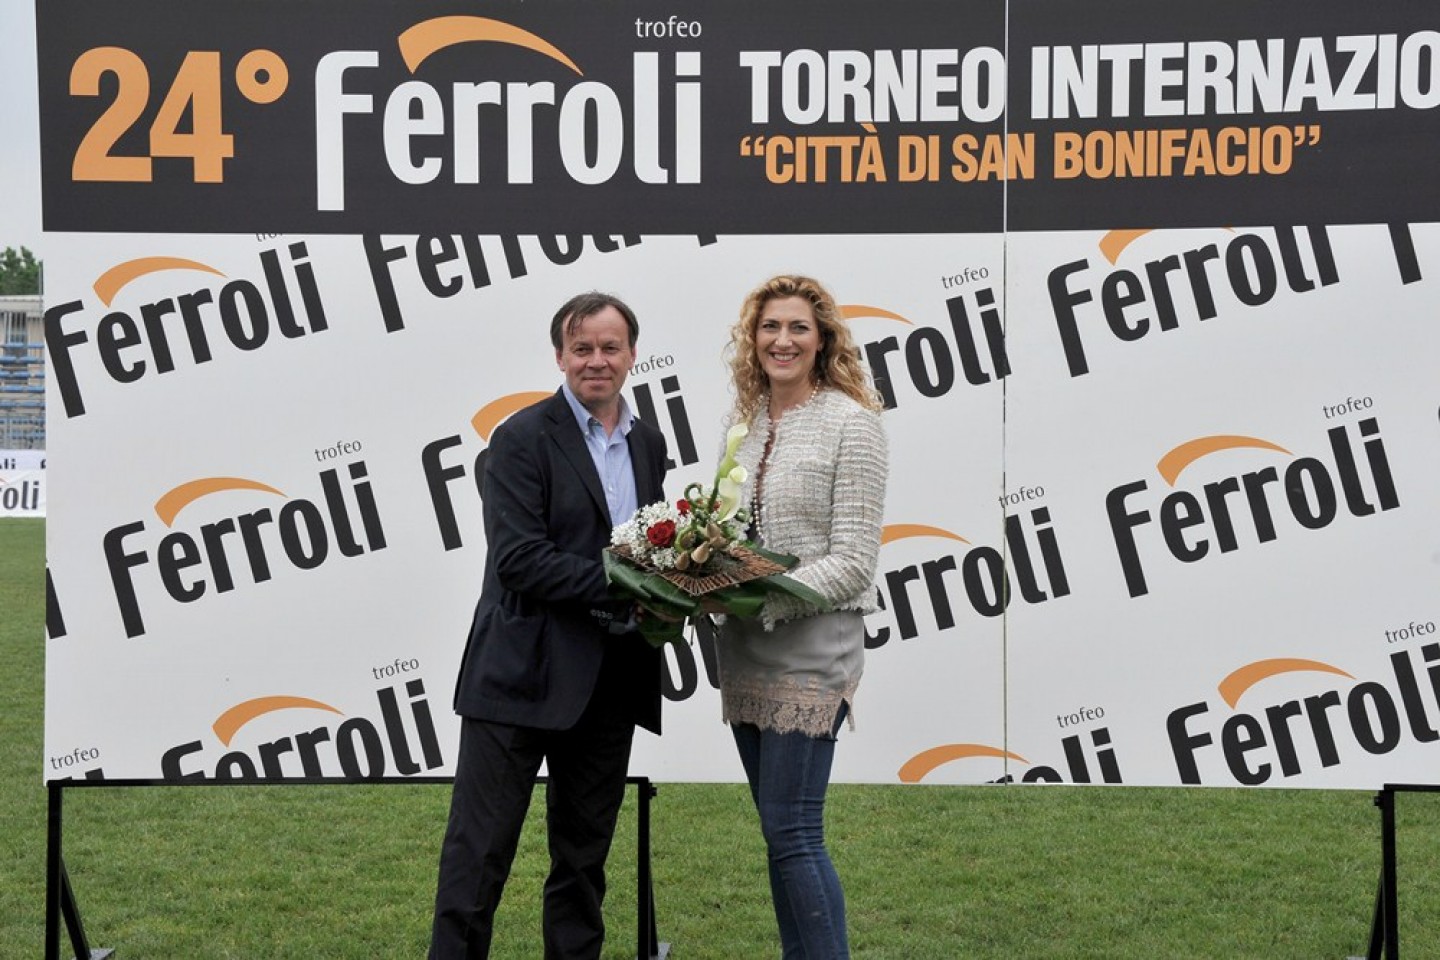 Trofeo Ferroli, una settimana dopo. Resoconto di 5 giorni di grande calcio